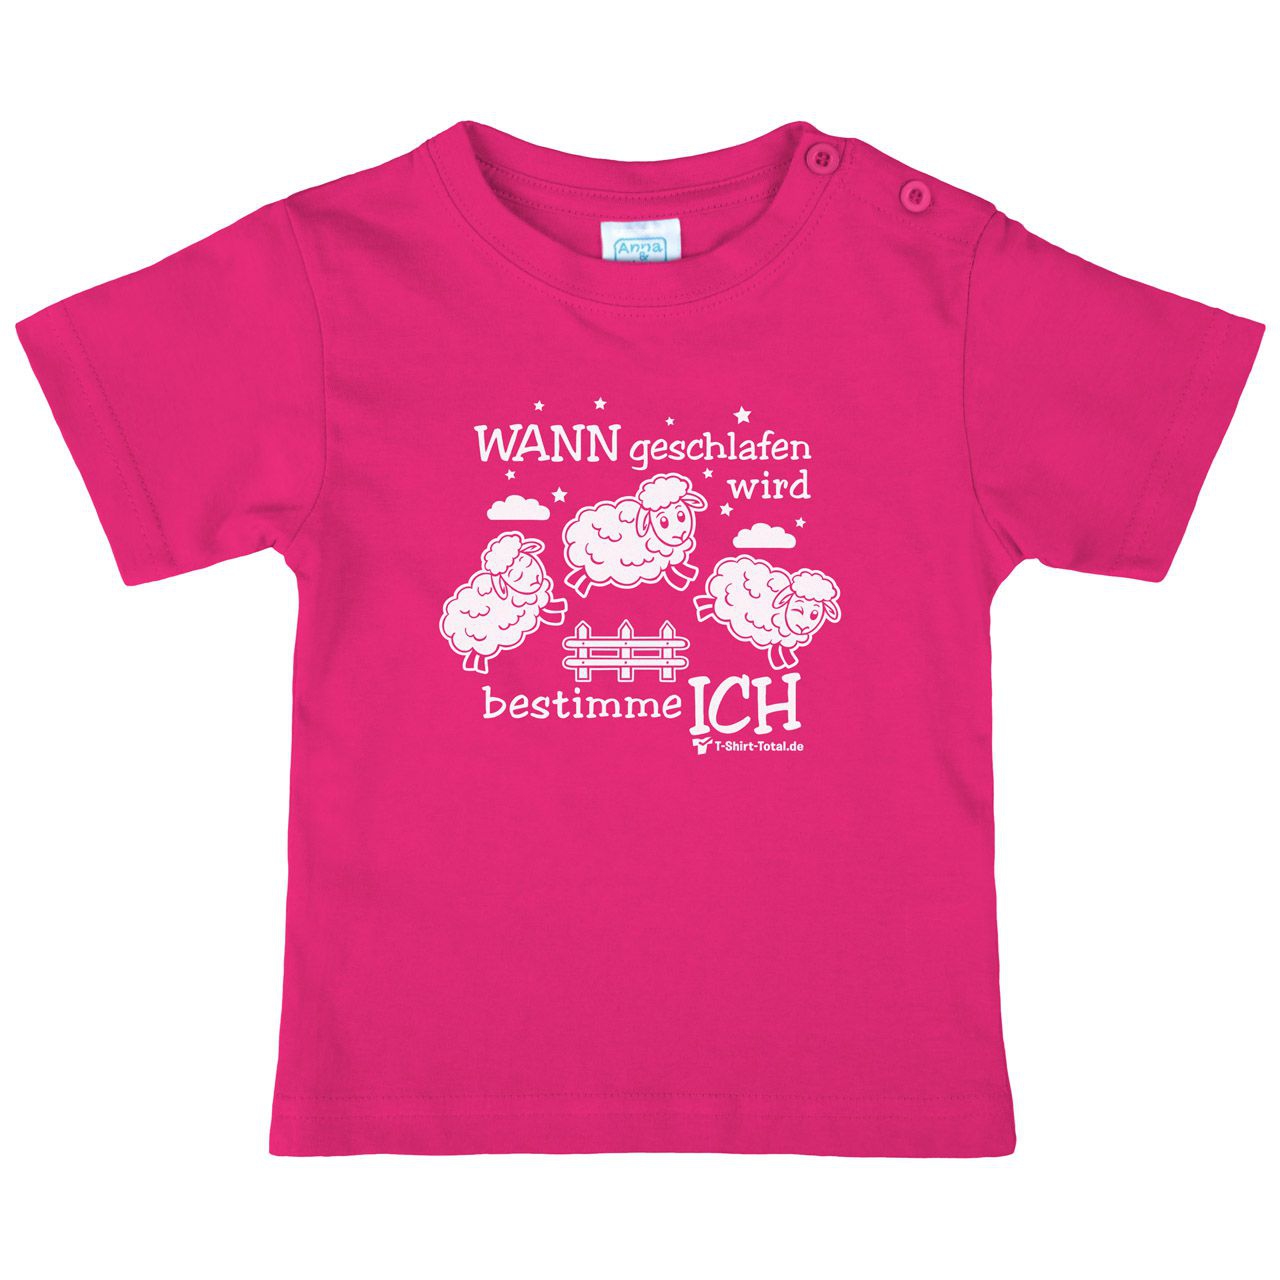 Wann geschlafen wird Kinder T-Shirt pink 68 / 74